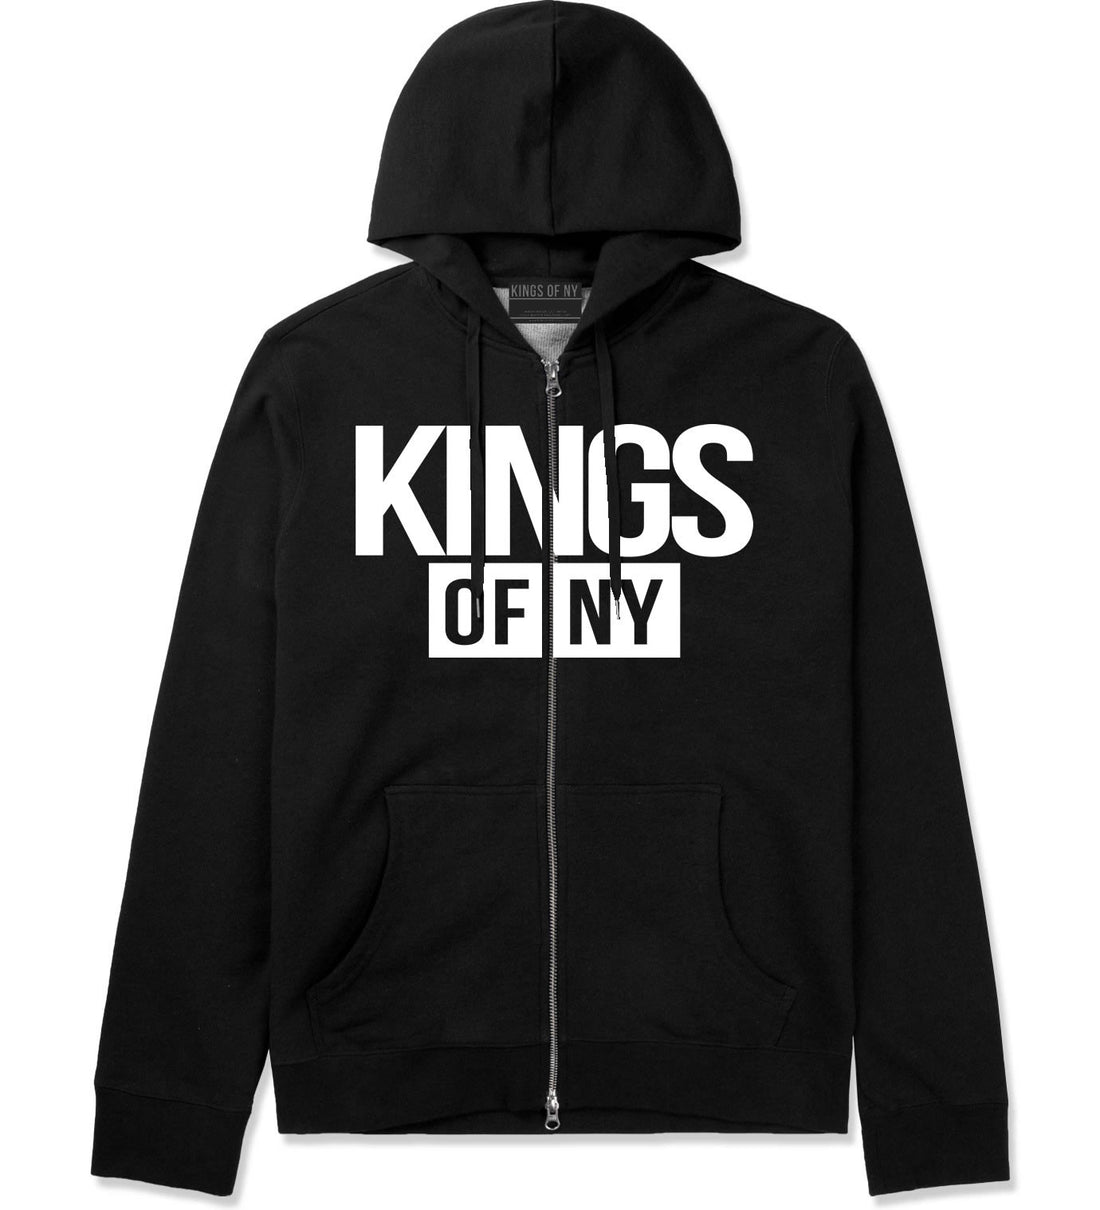 Kings Of NY Logo W15 Zip Up Hoodie in Black By Kings Of NY